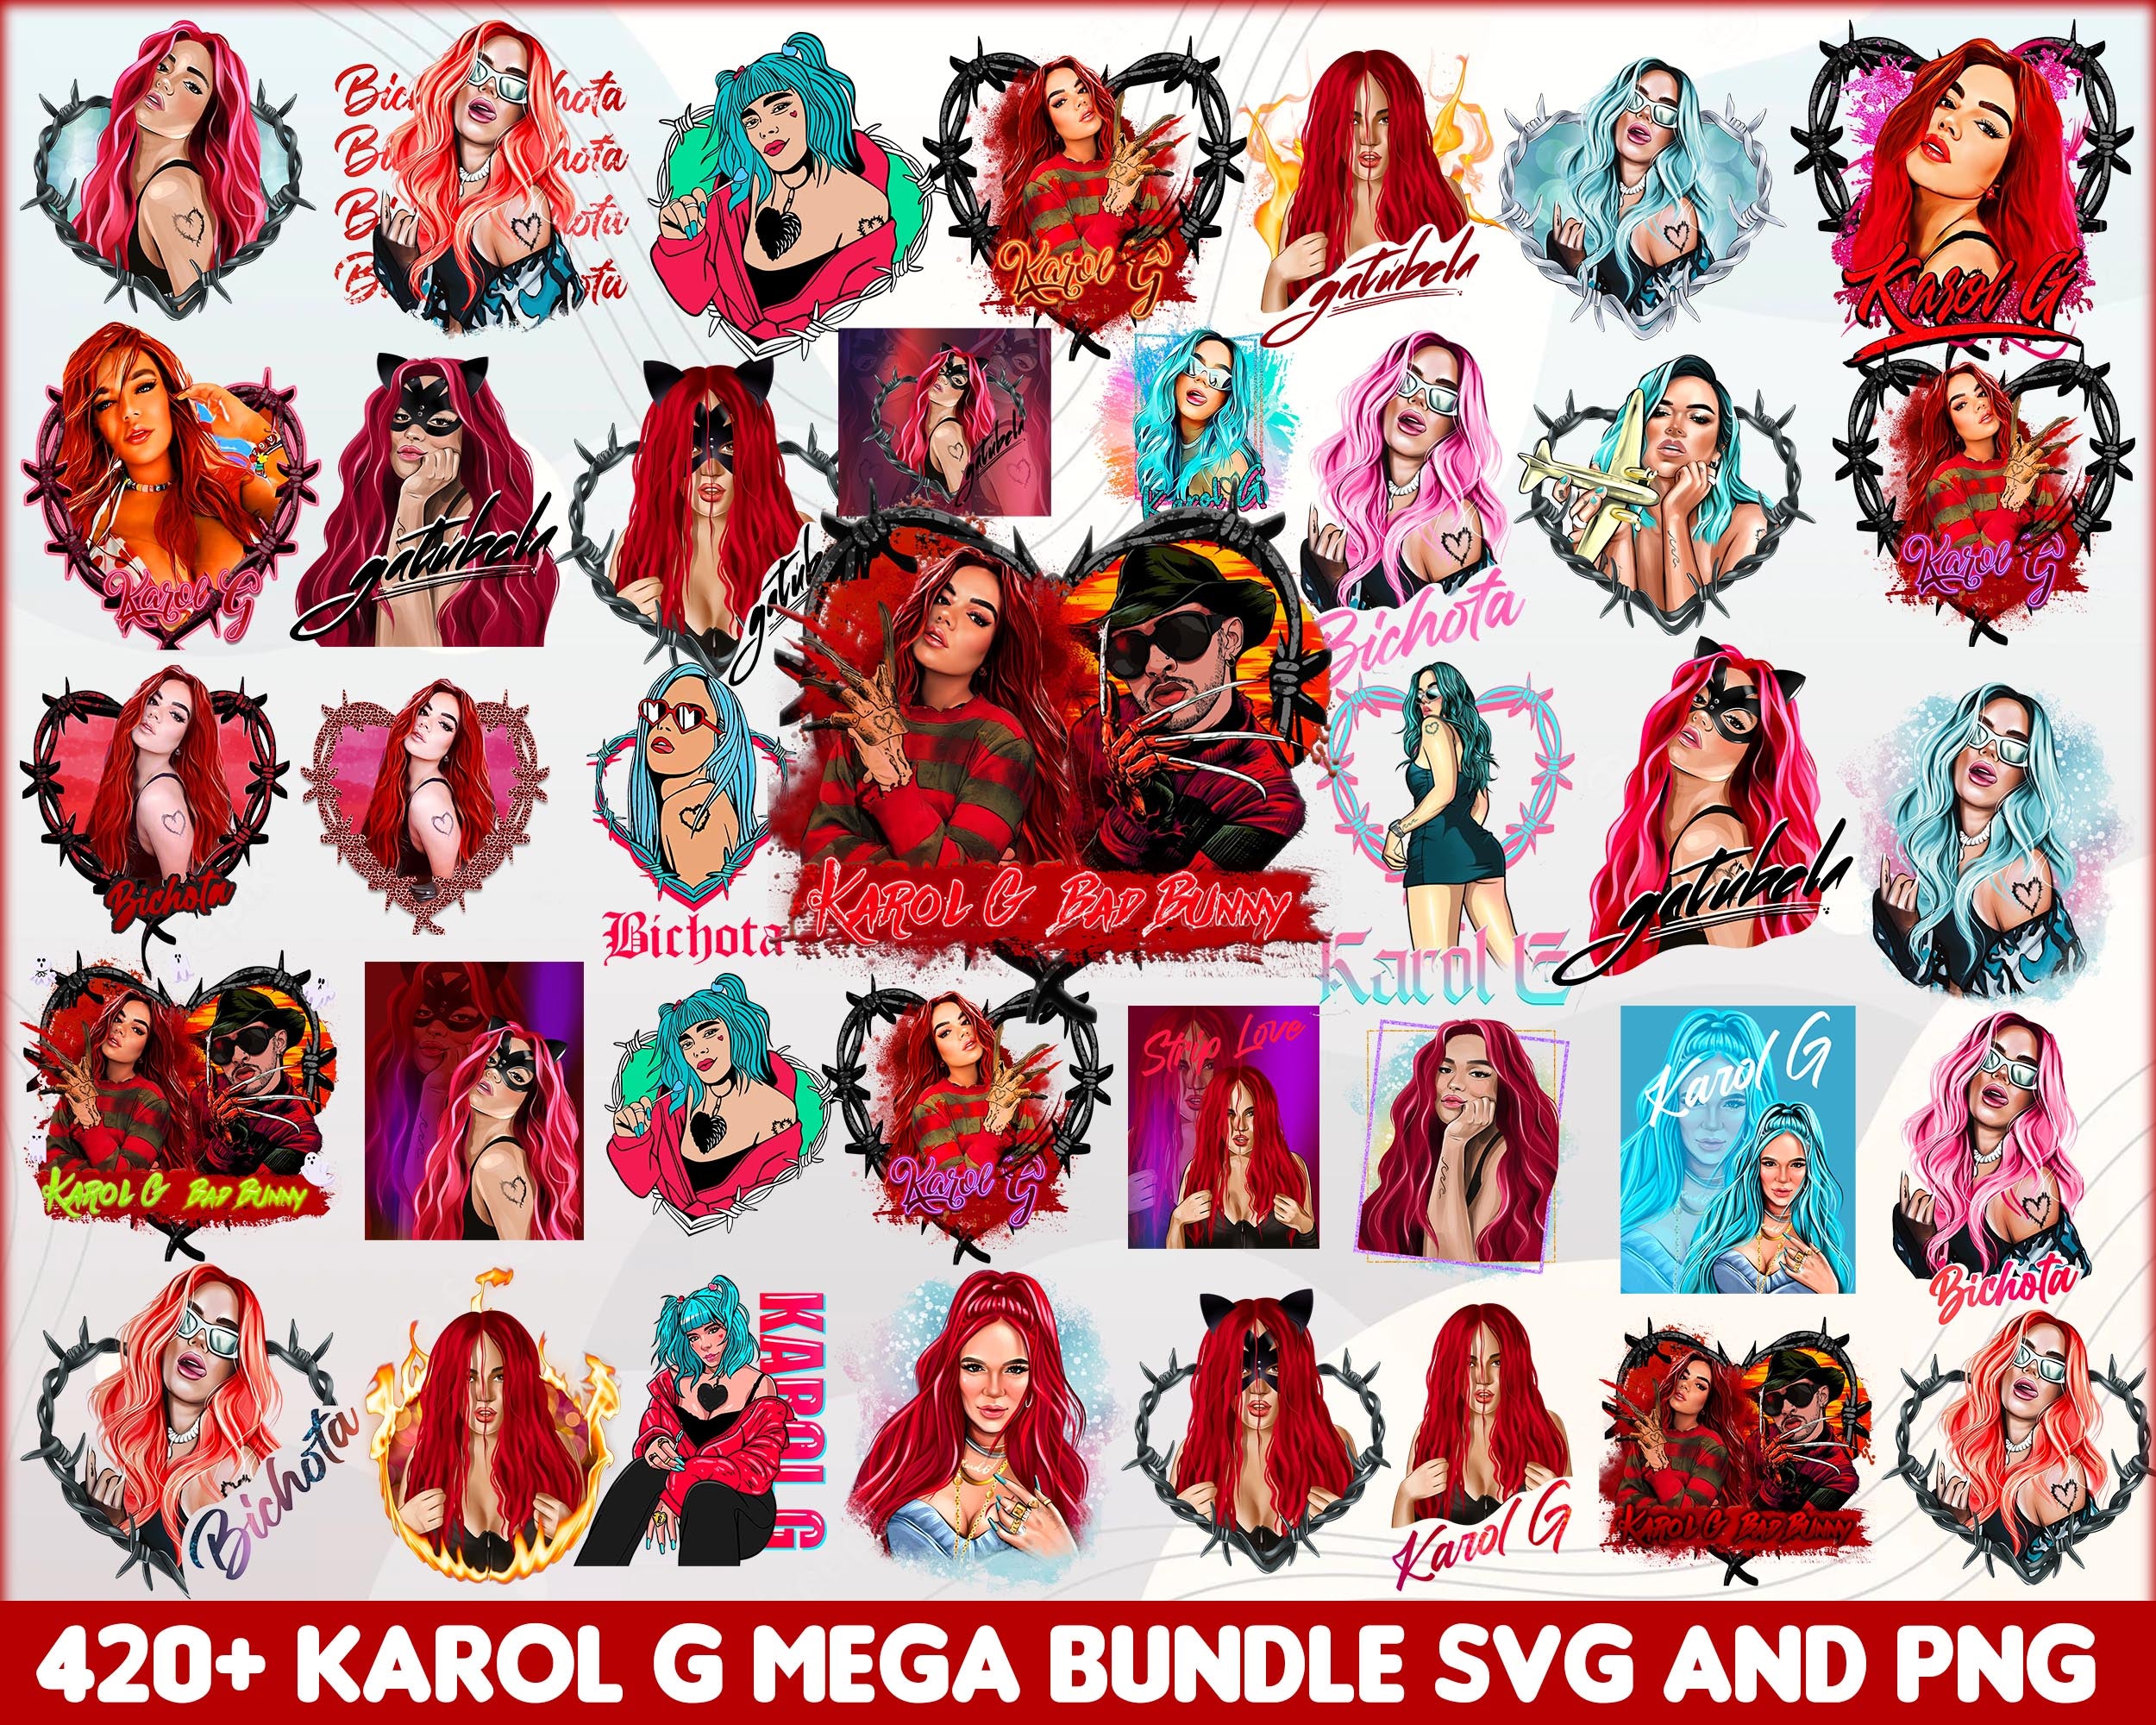 425+ Mega Bundle Karol G red hair svg 2022, Karol G Bichota singer png files, Silhouette, Digital download